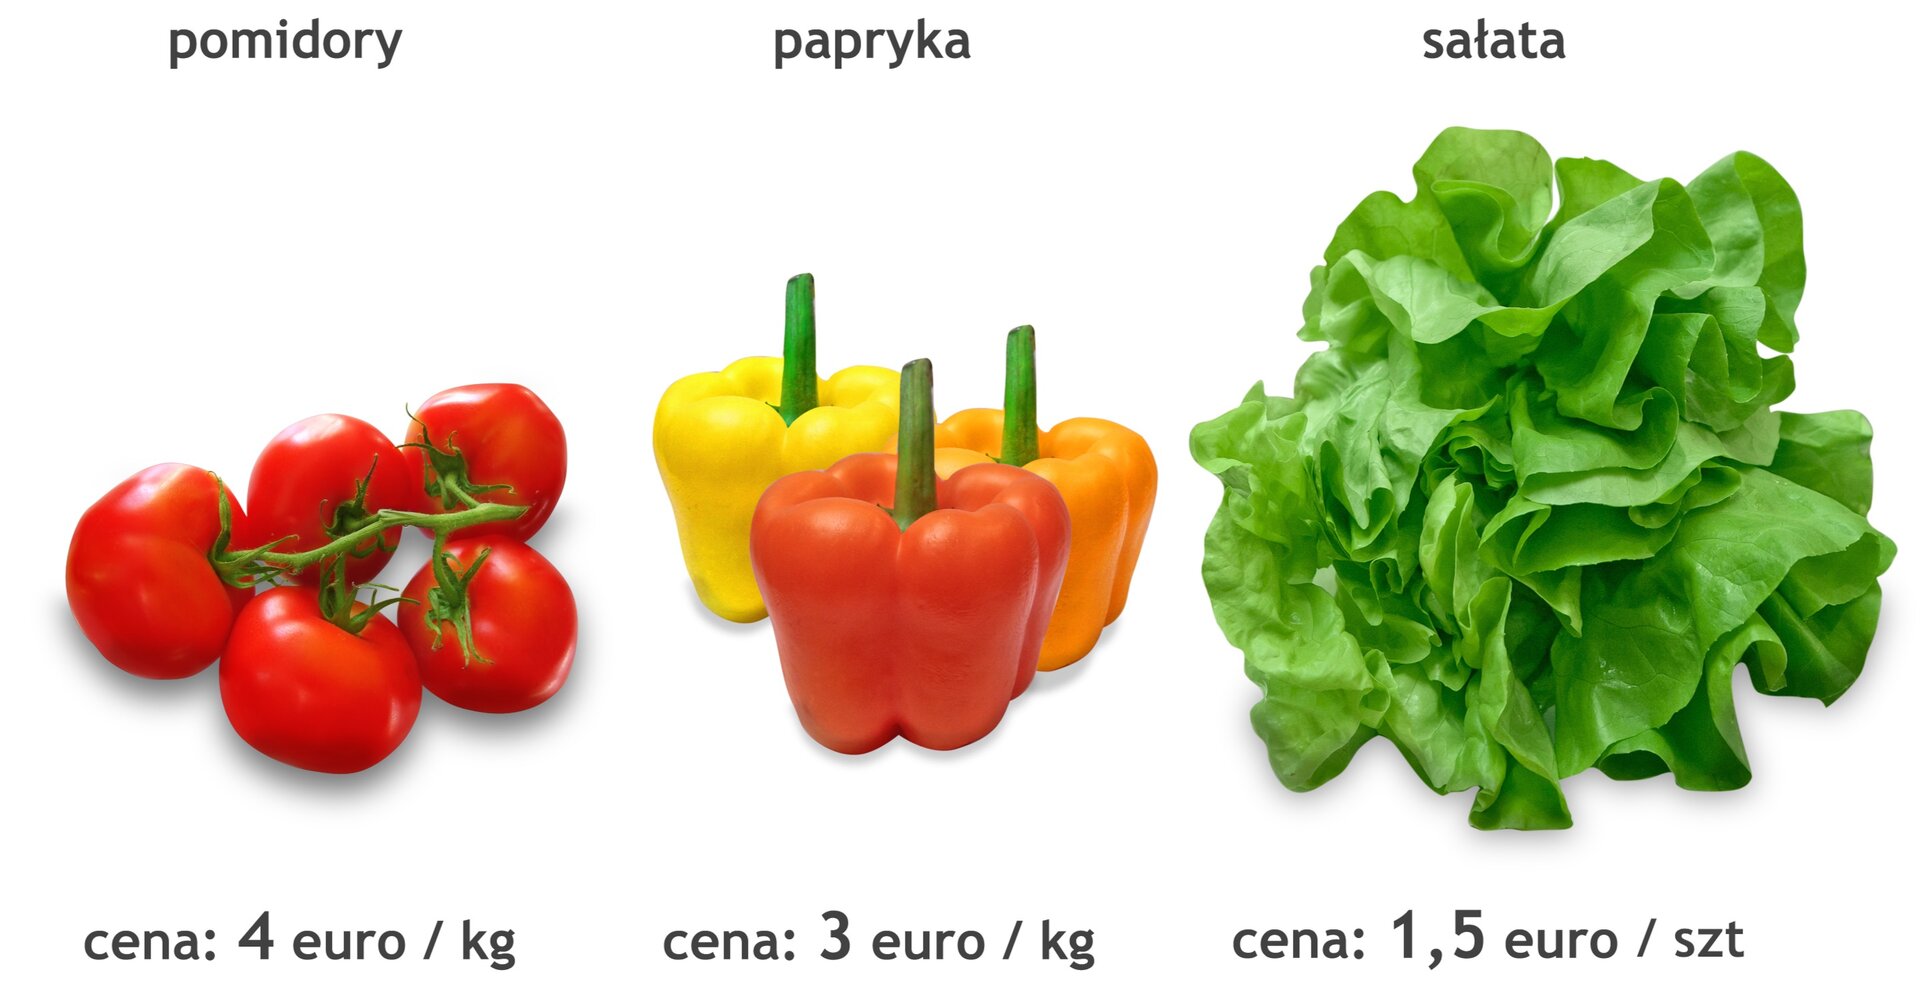 Rysunek pomidorów, papryki i sałaty. Cena pomidorów: 4 euro za kilogram. Cena papryki: 3 euro za kilogram. Cena sałaty: 1,5 euro za kilogram.